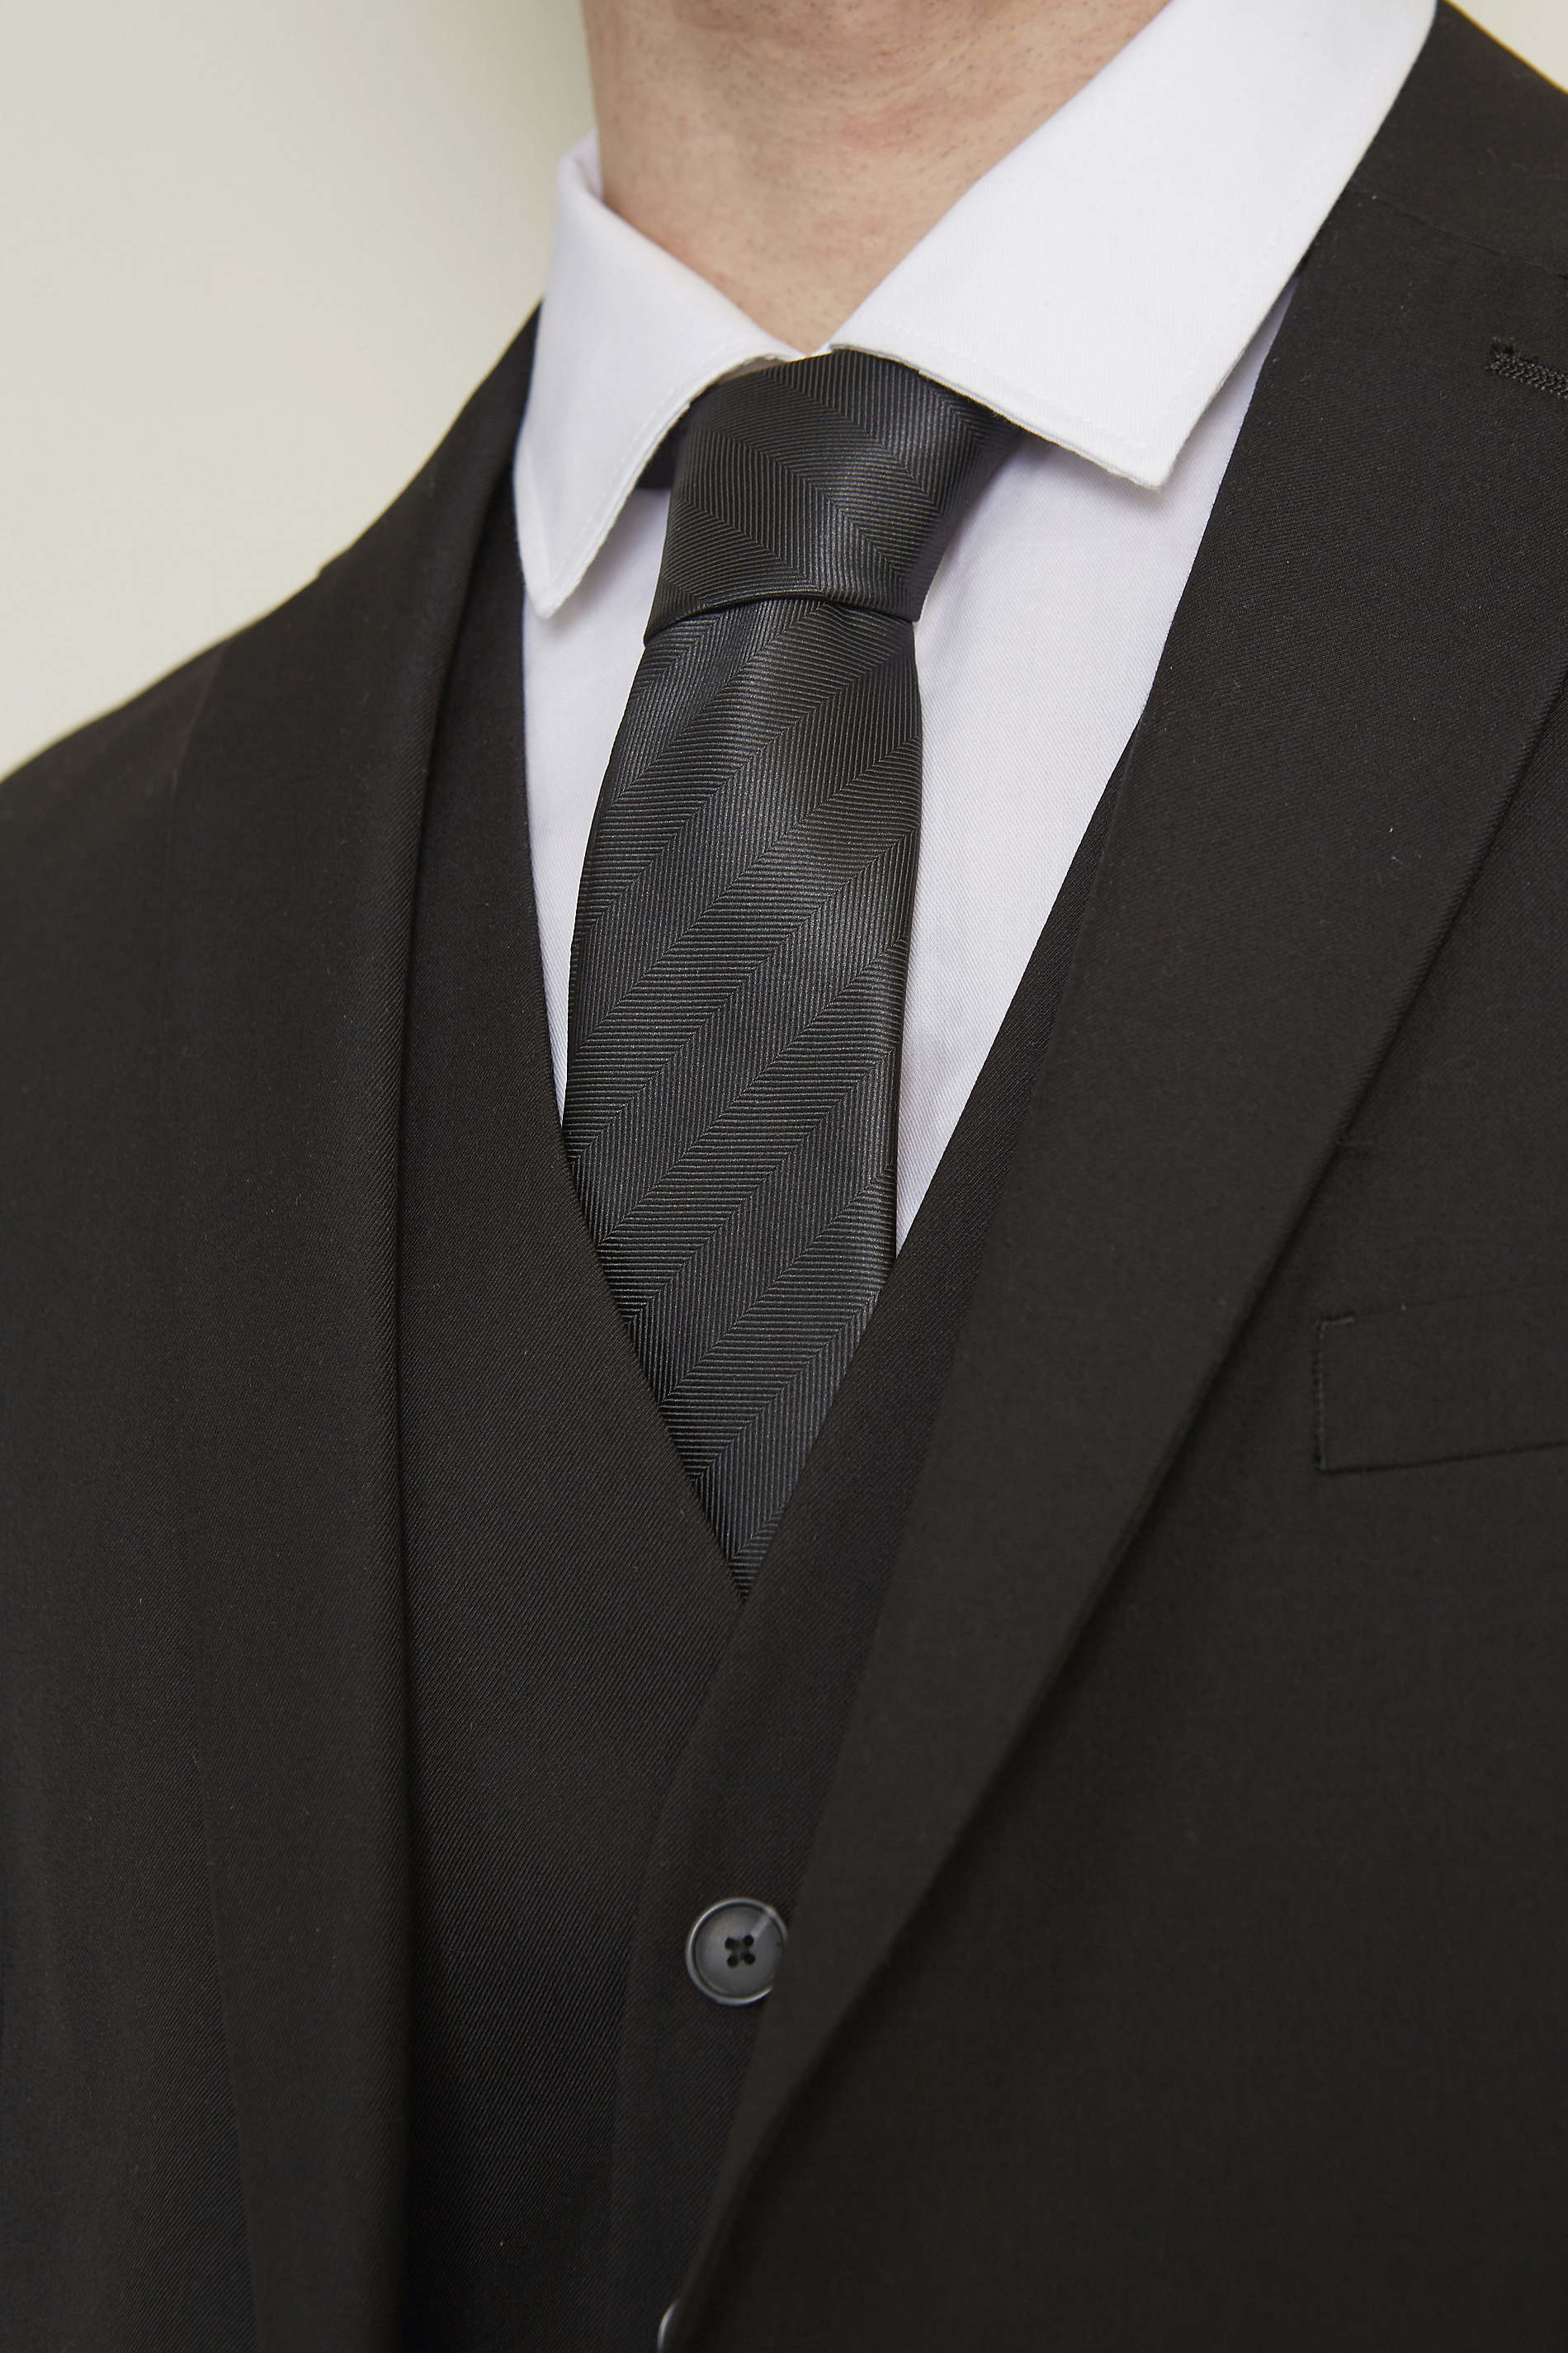 CRAVATE CLUB FAUX UNI<p>La cravate club est un essentiel du vestiaire masculin. Son faux uni apporte sobriété et élégance aux tenues formelles.</p> NEOBLU TOMMY